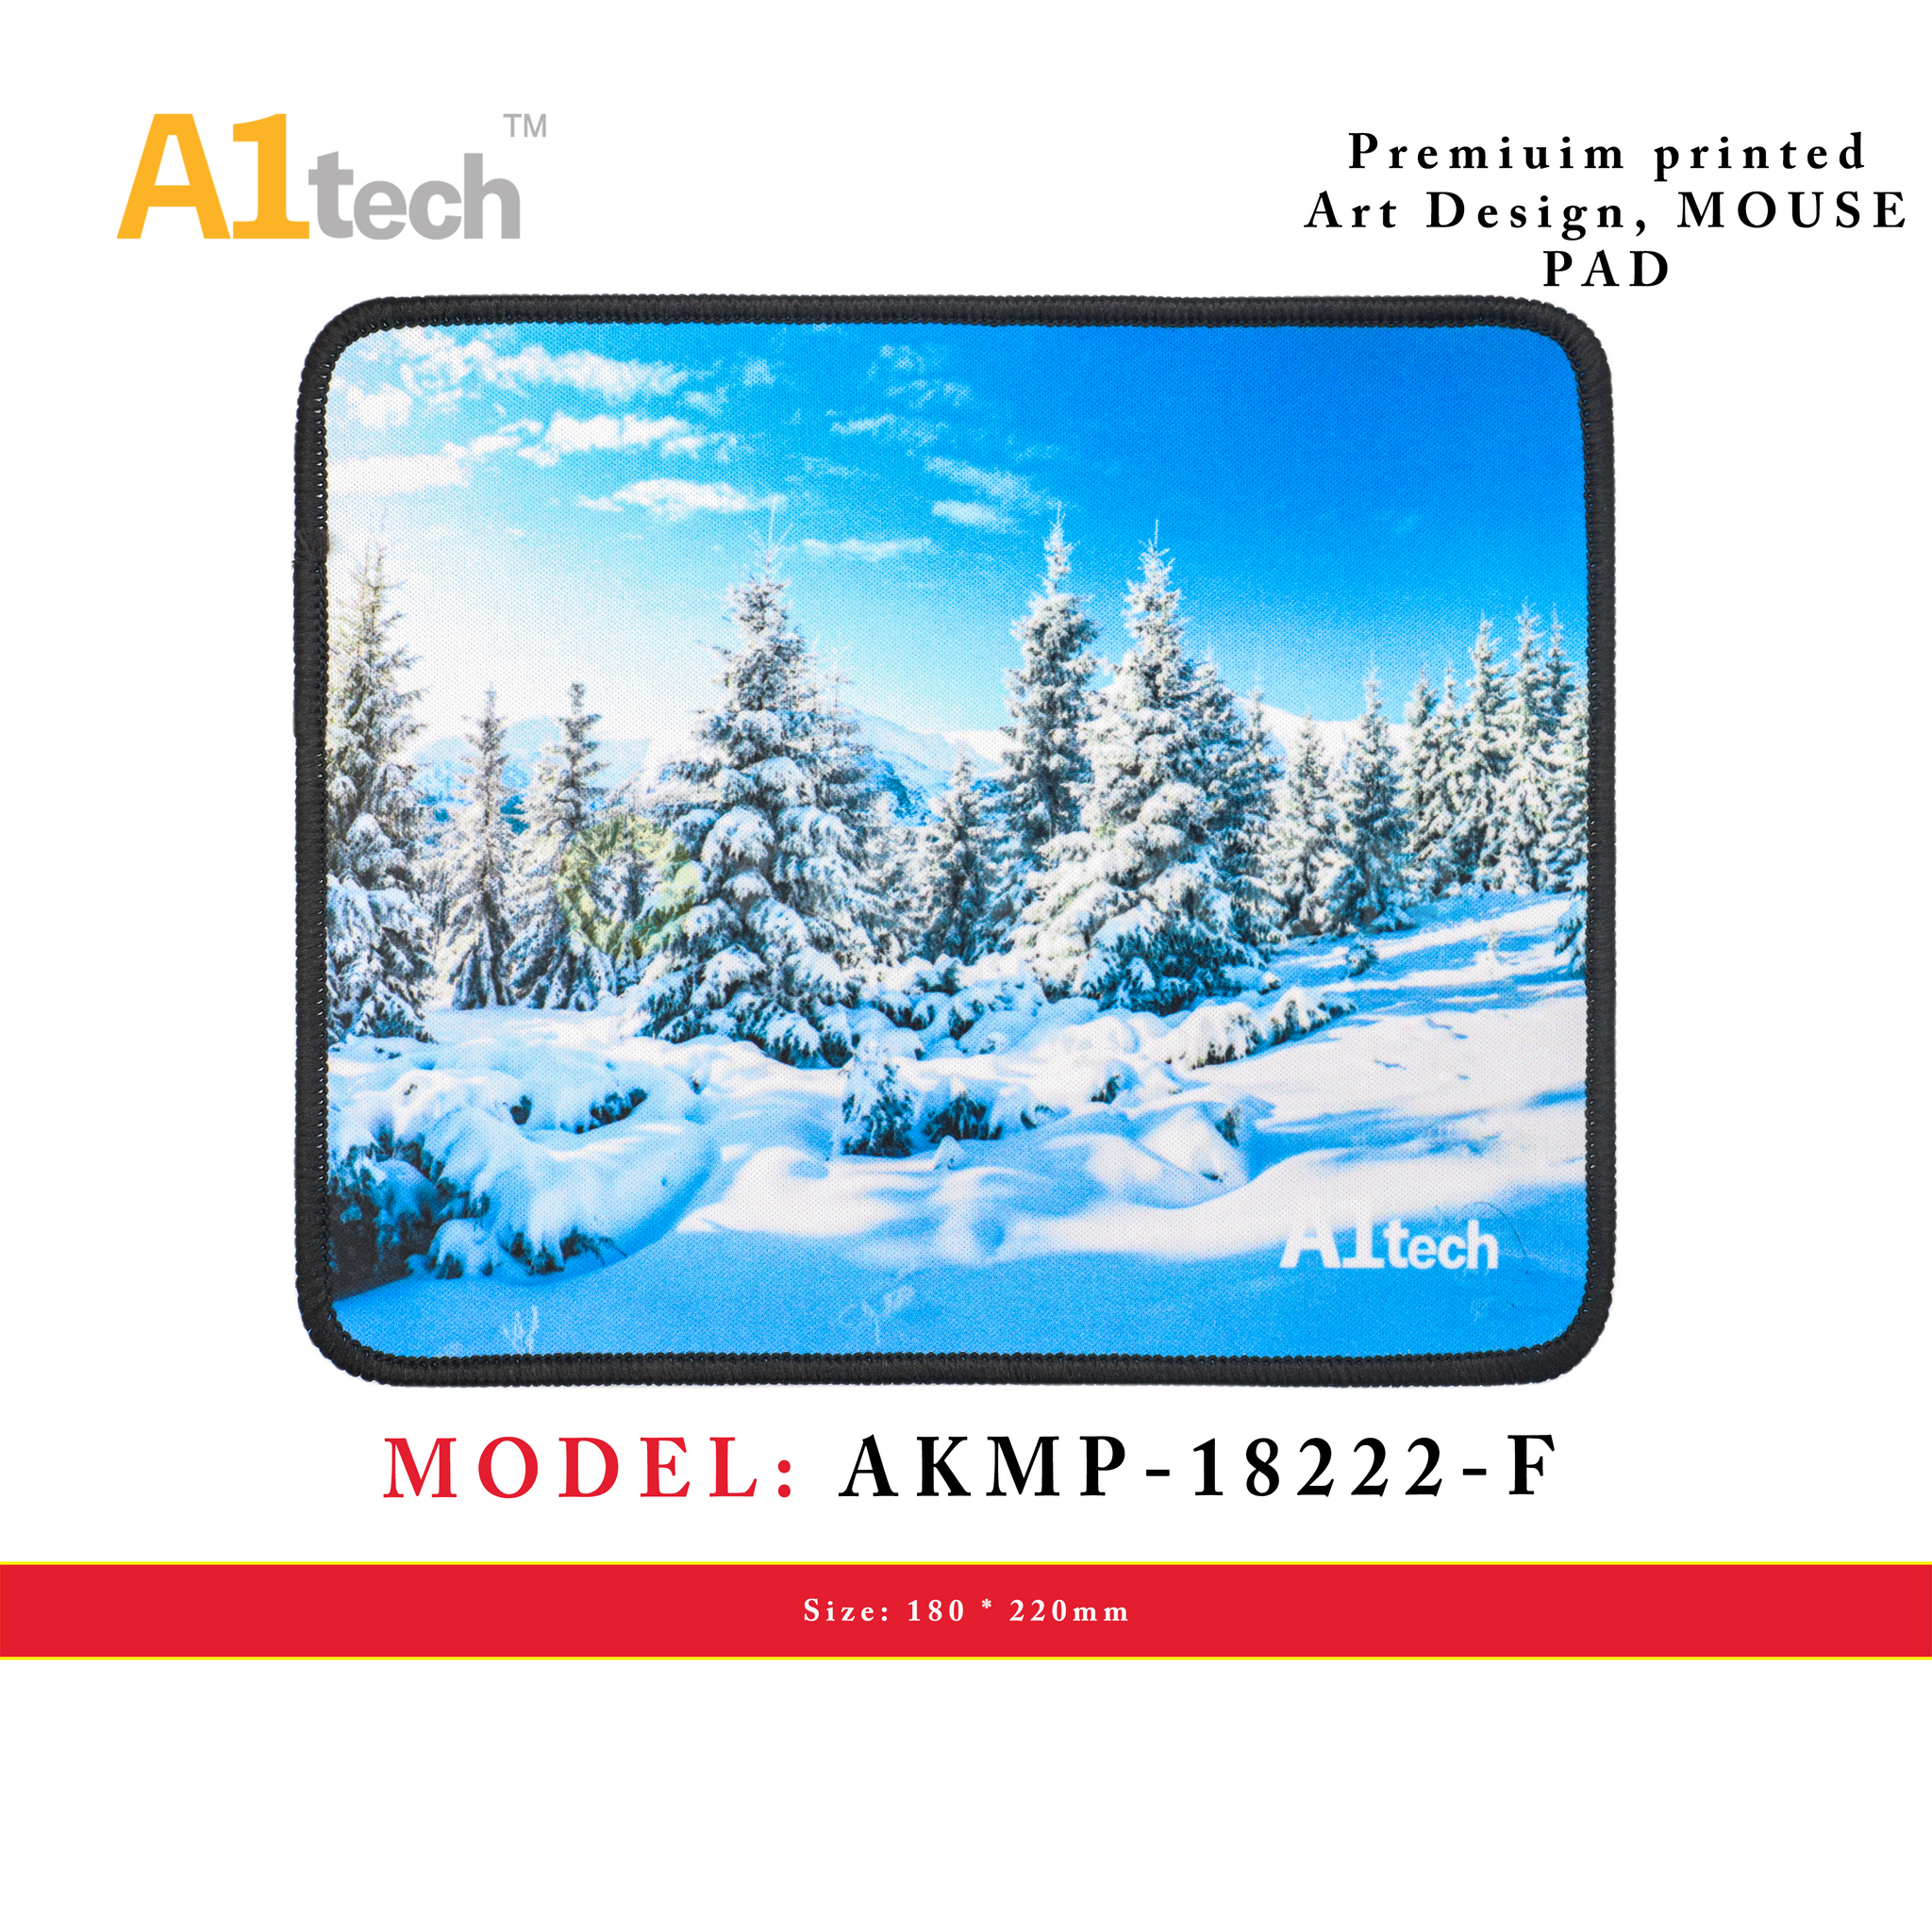 A1TECH AKMP-18222-F MOUSE PAD